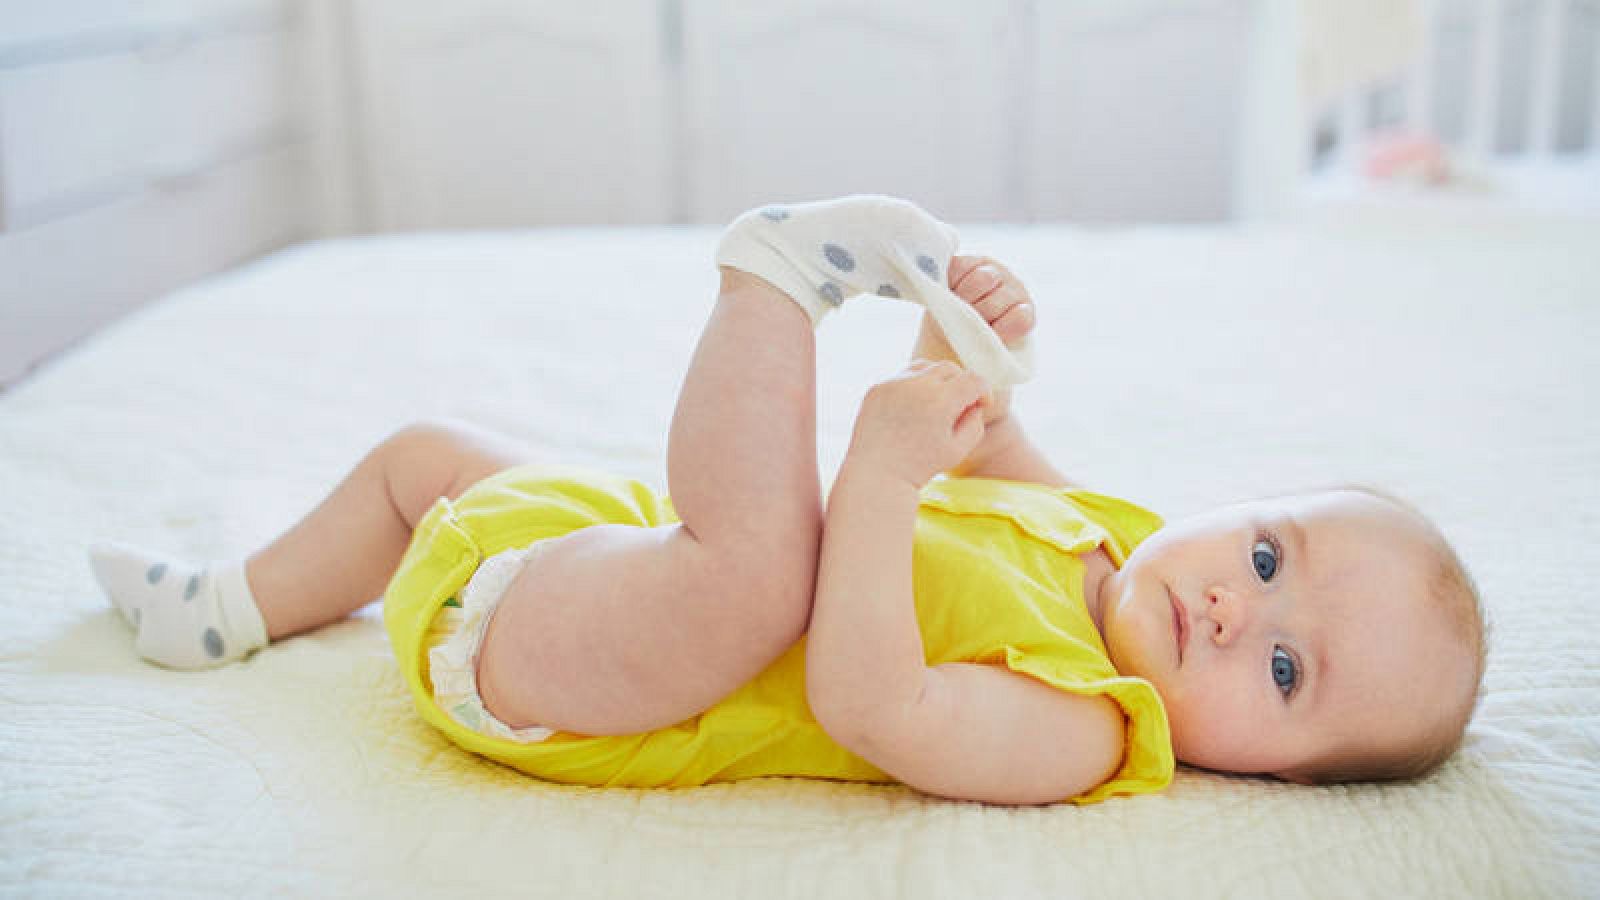 El 90% de los calcetines bebés tiene restos tóxicos de bisfenol-A parabenos, según un estudio - RTVE.es